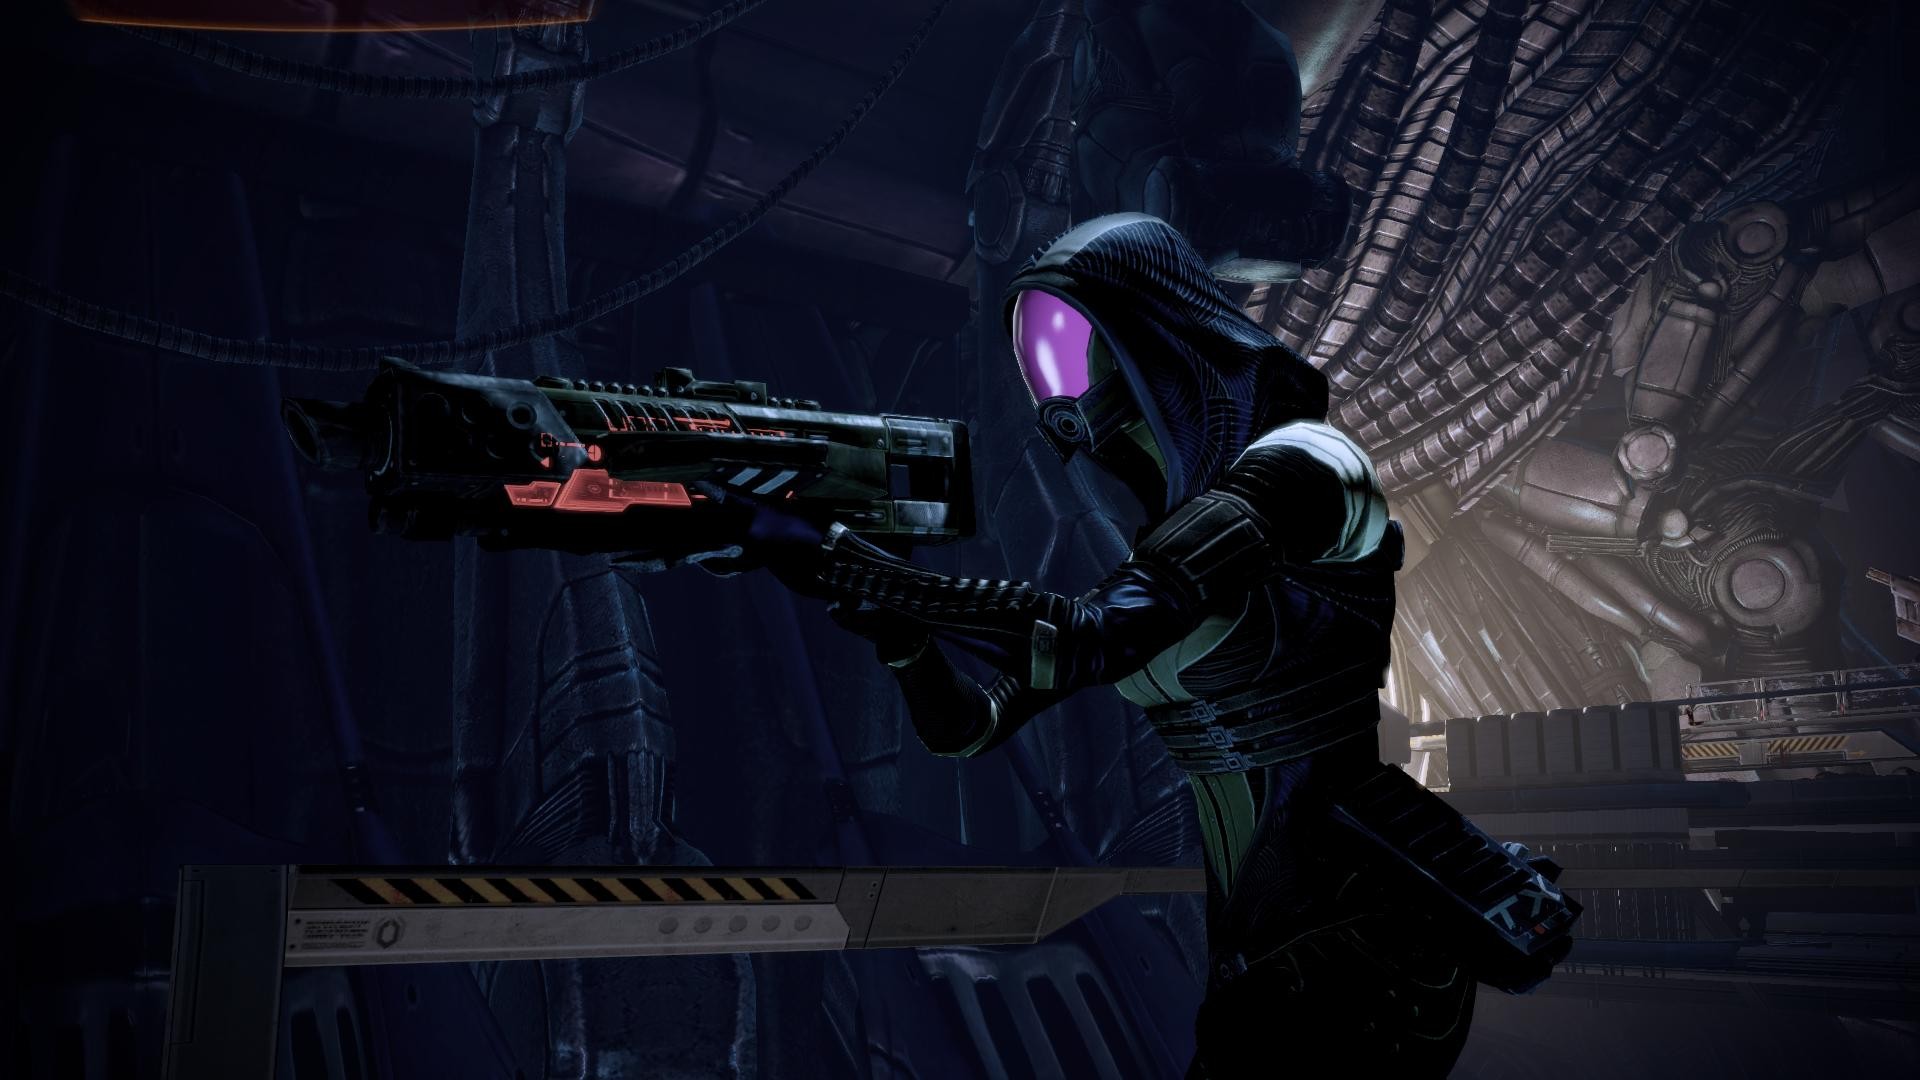 Descarga gratuita de fondo de pantalla para móvil de Mass Effect 3, Tali'zorah, Mass Effect, Videojuego.